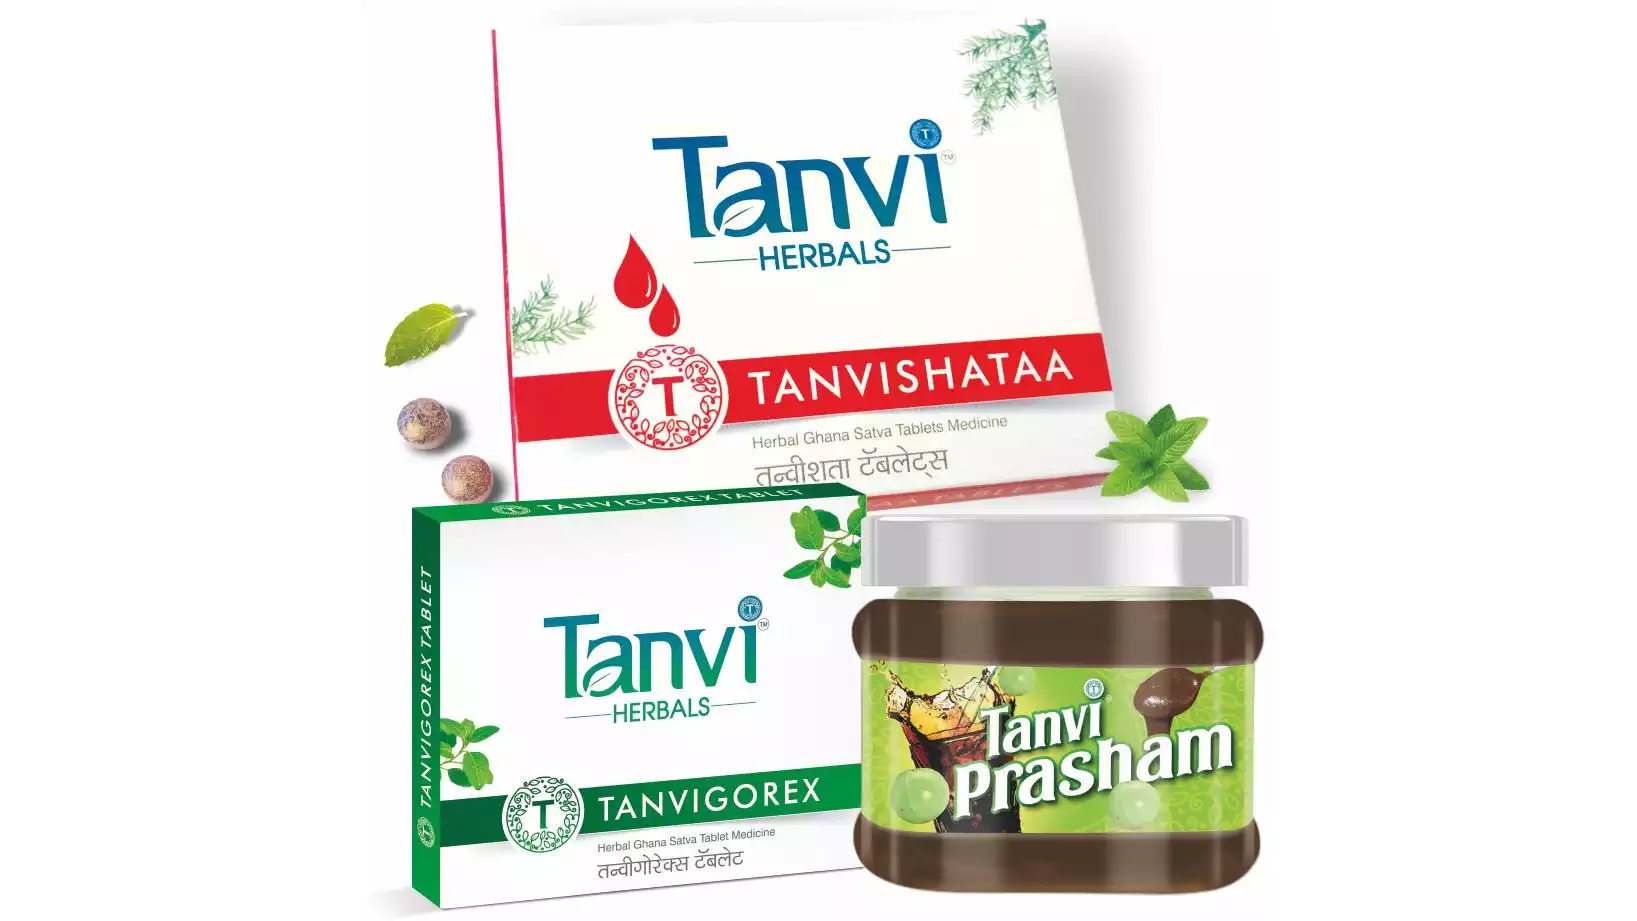 Tanvi Herbals Male Wellness Kit (1Pack)